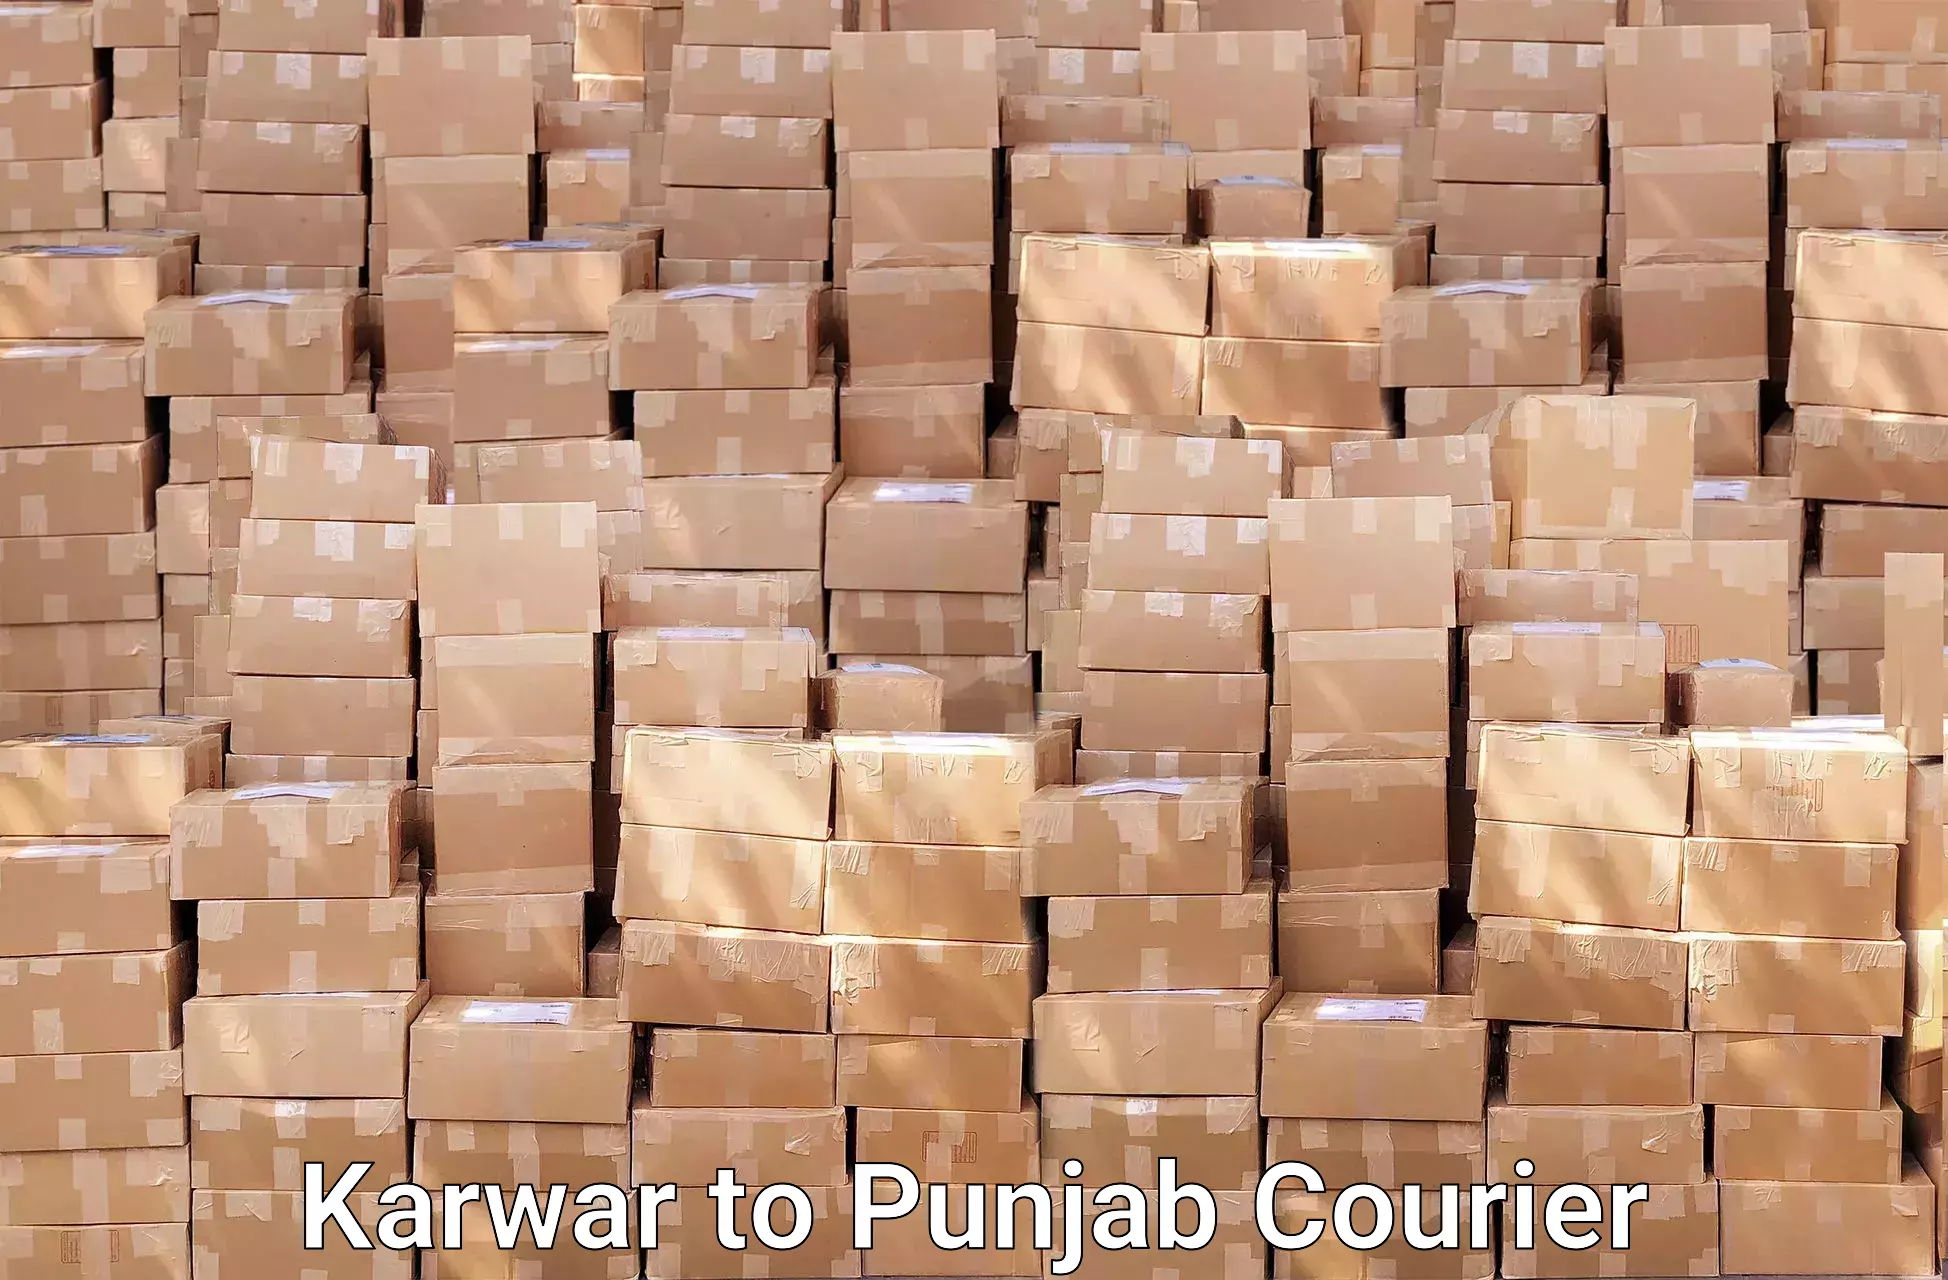 Trusted moving company Karwar to Bagha Purana